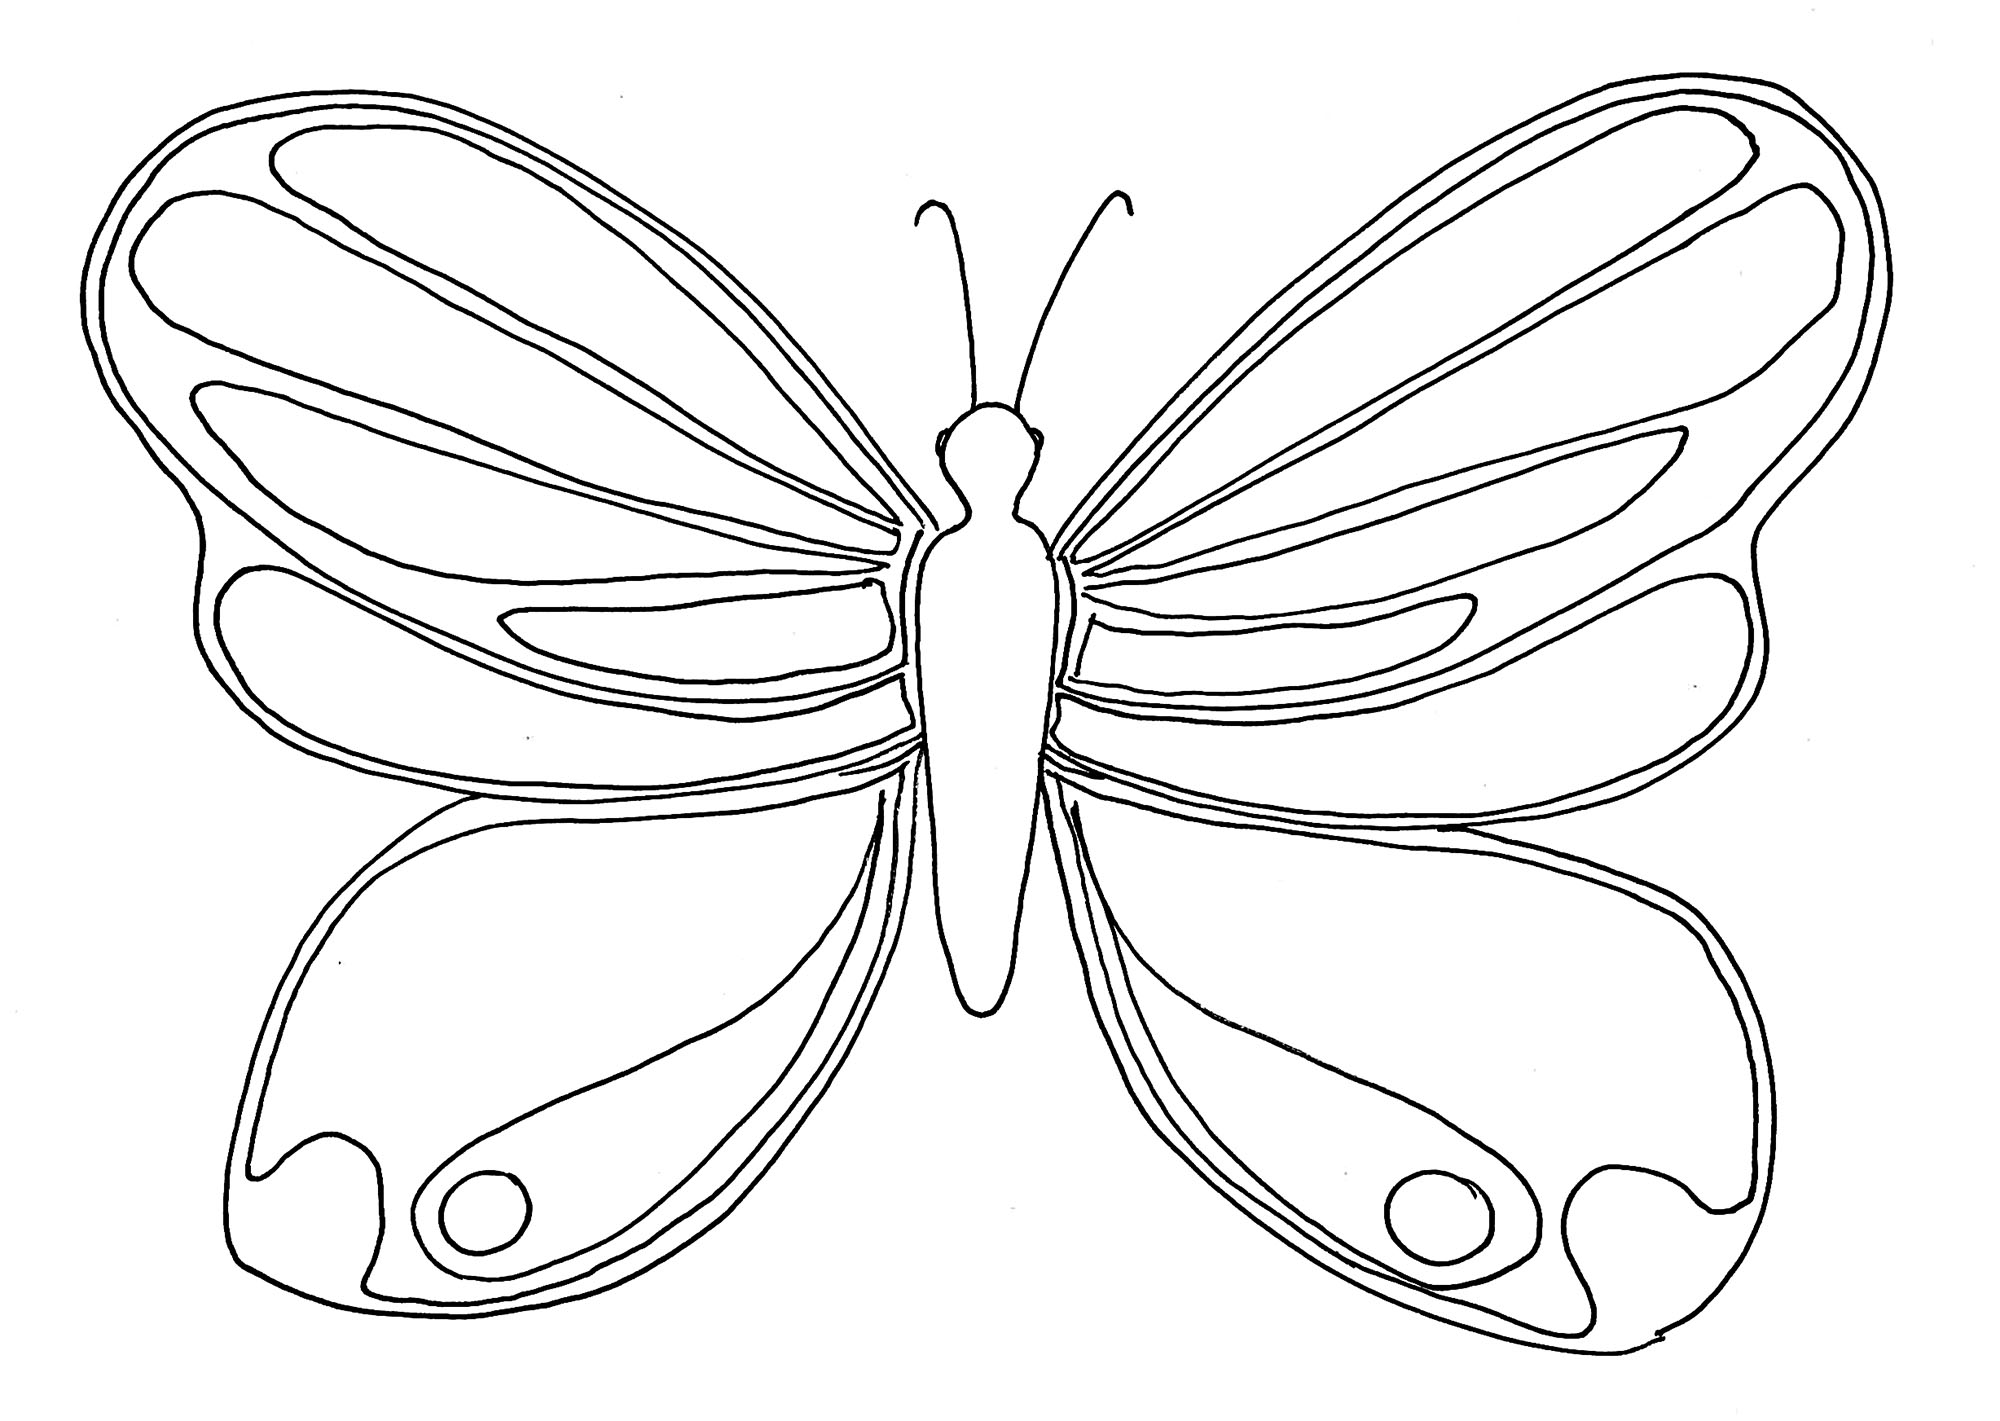 Imagen de una mariposa para descargar e imprimir para los niños